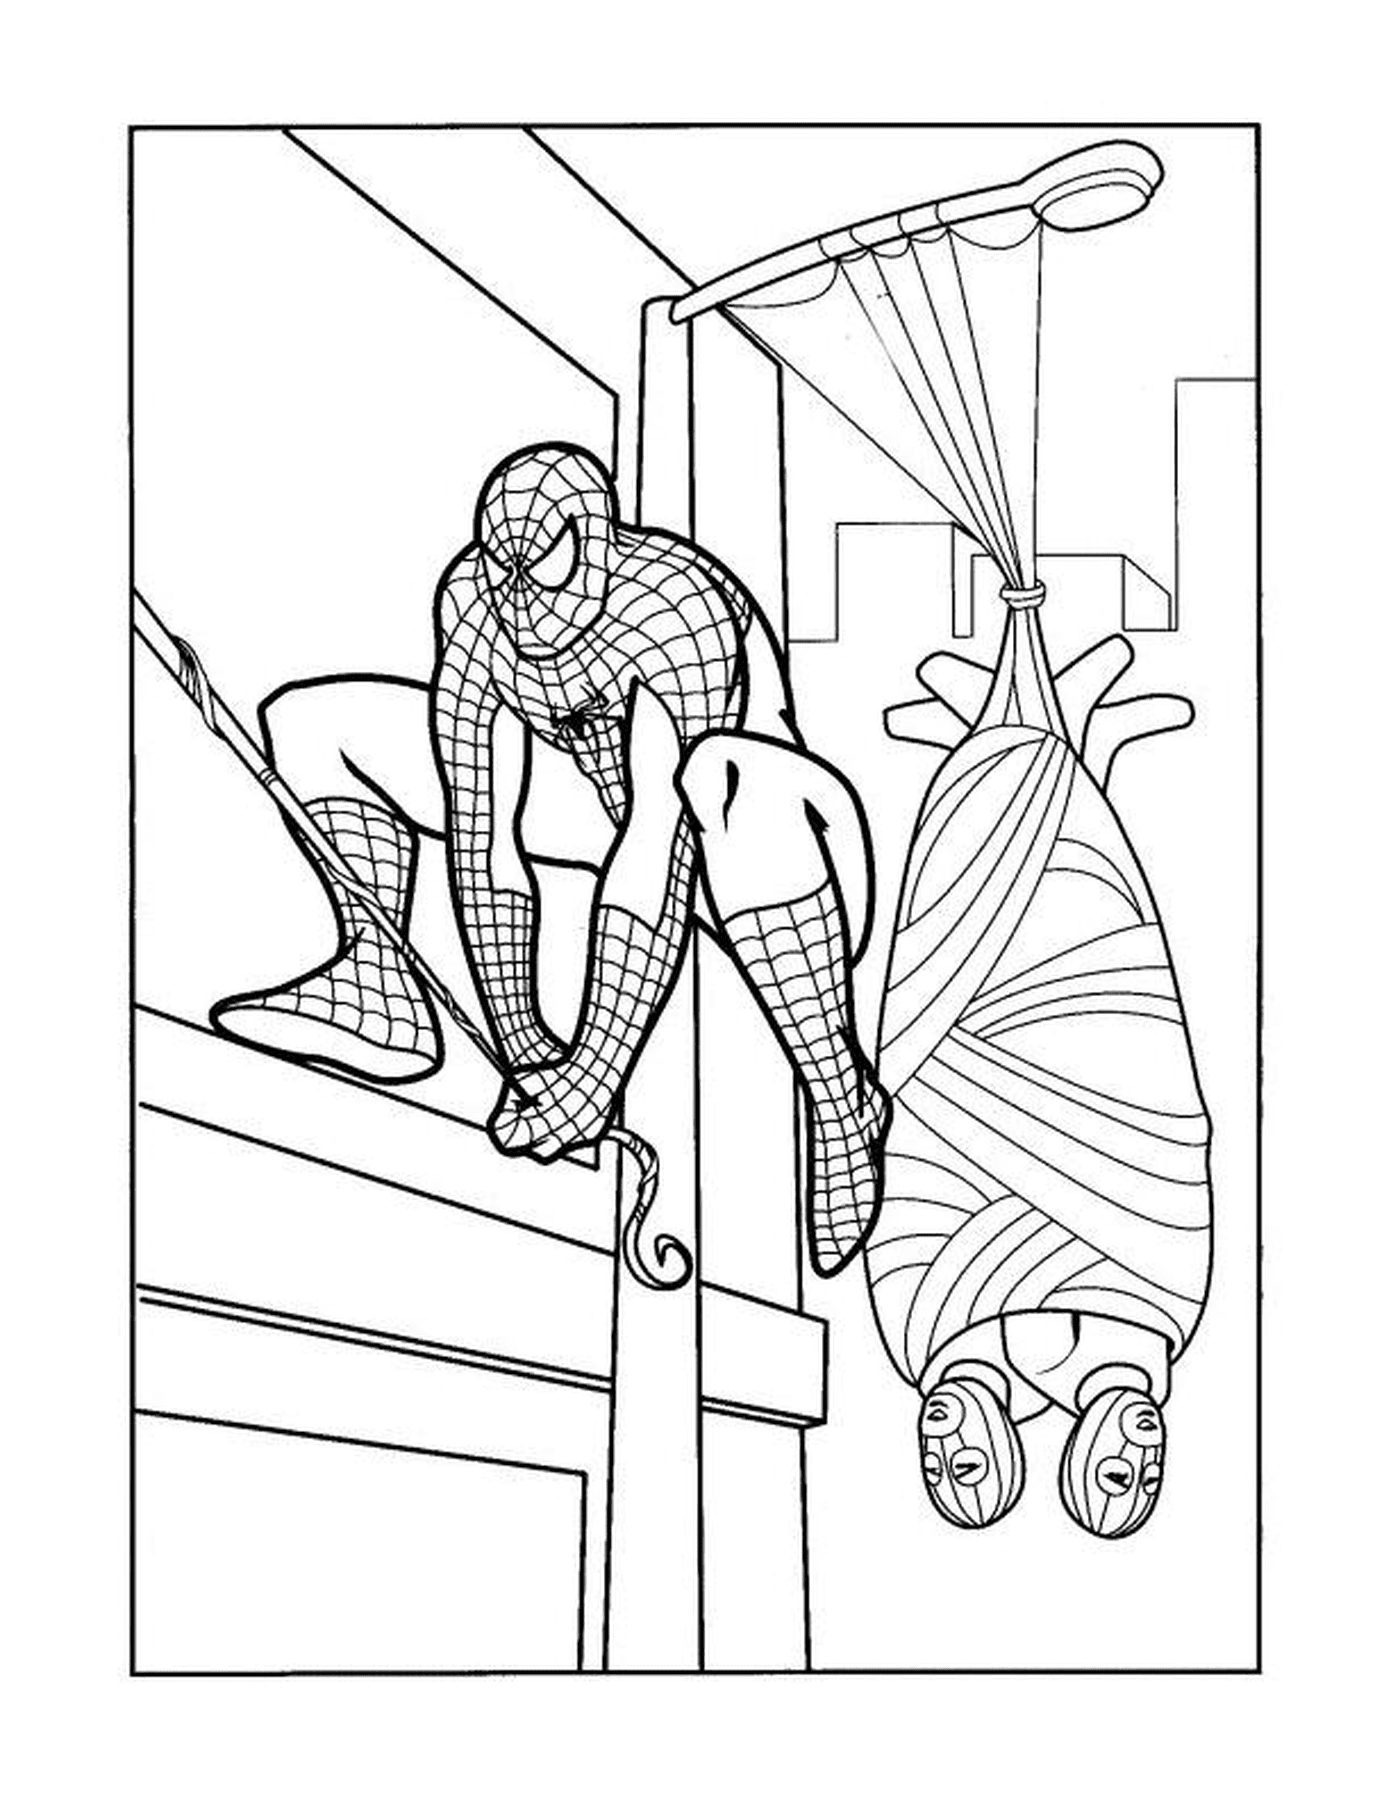  Homem-Aranha escalando um prédio 